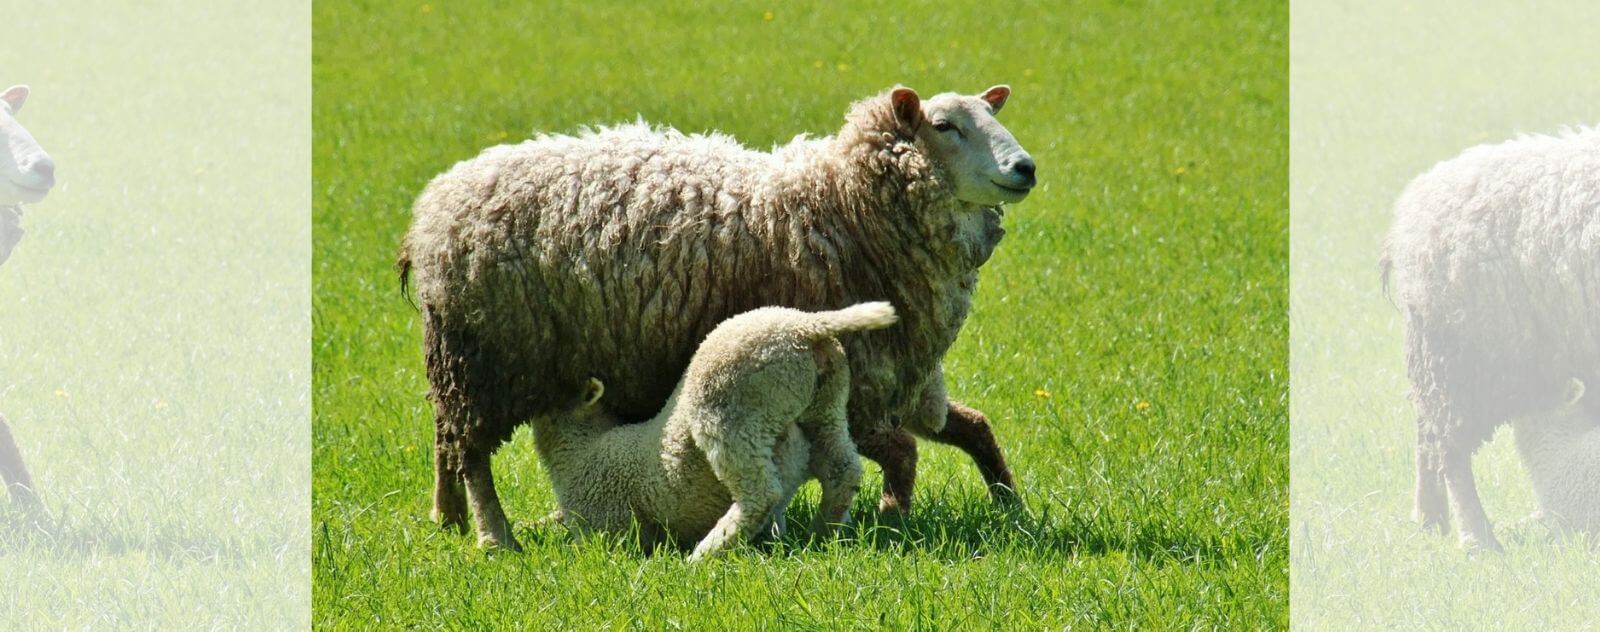 Corderos mamando leche de una oveja